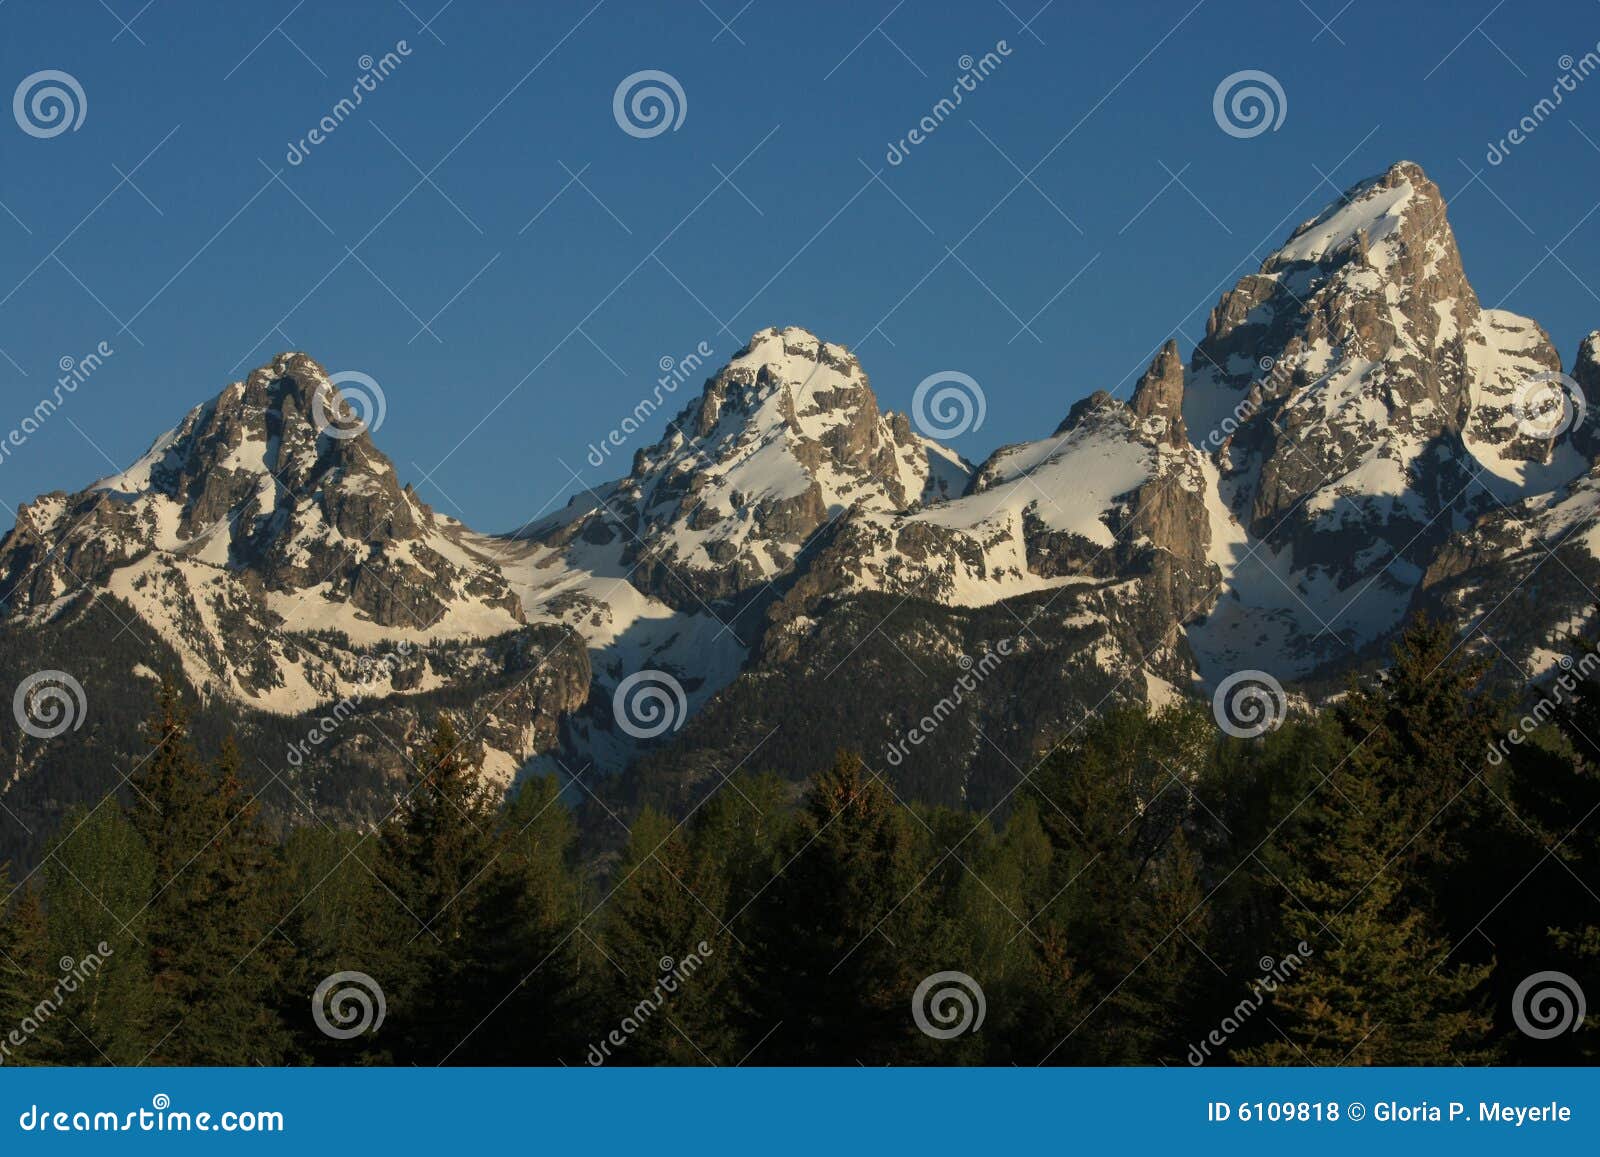 mountain peaks